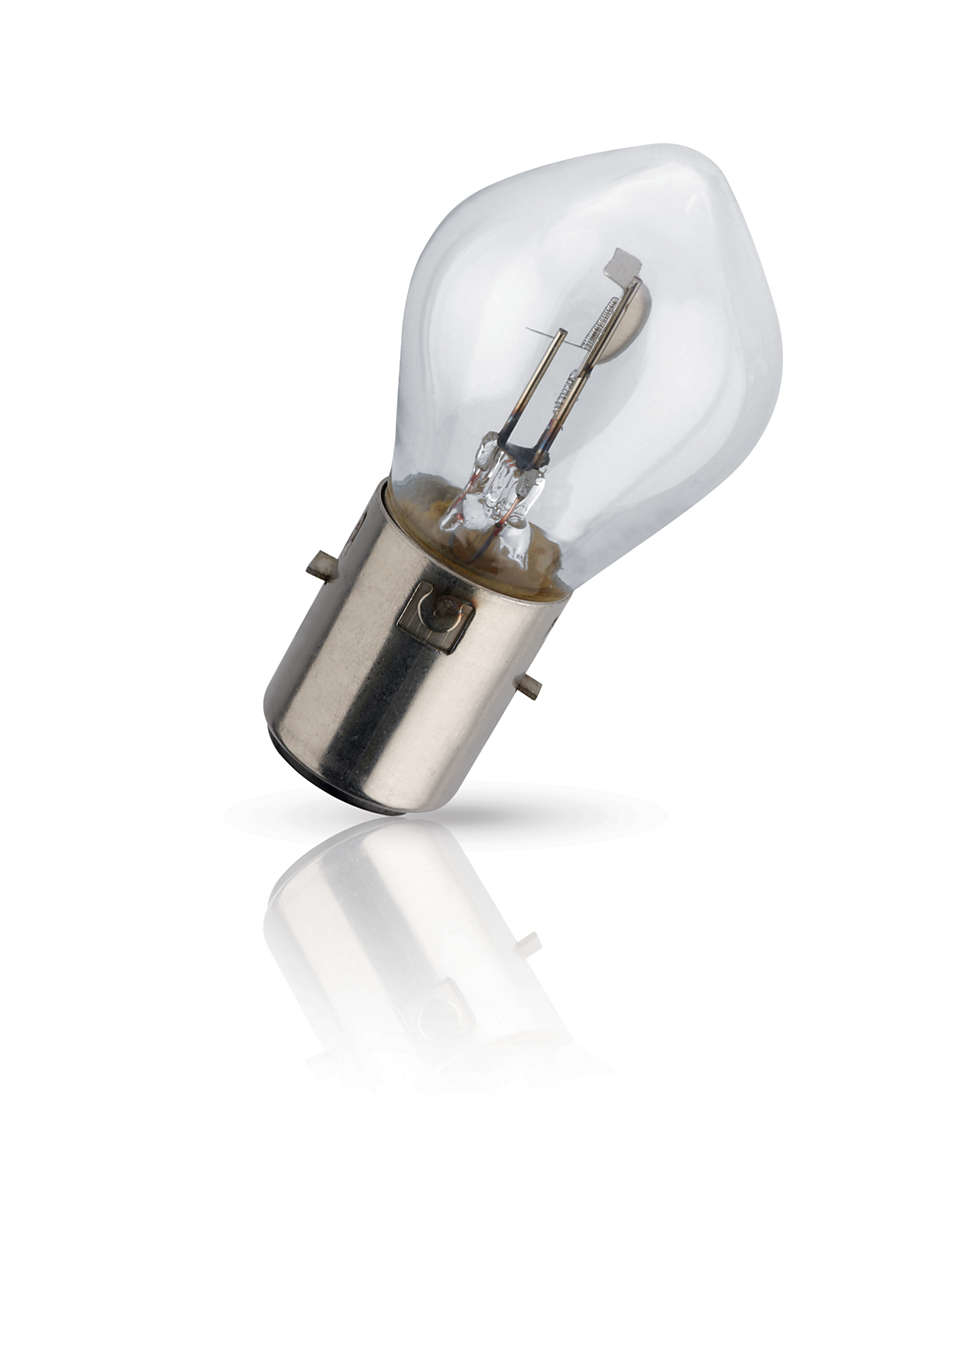 Lampe ampoule Philips H7 - Sétif Algérie